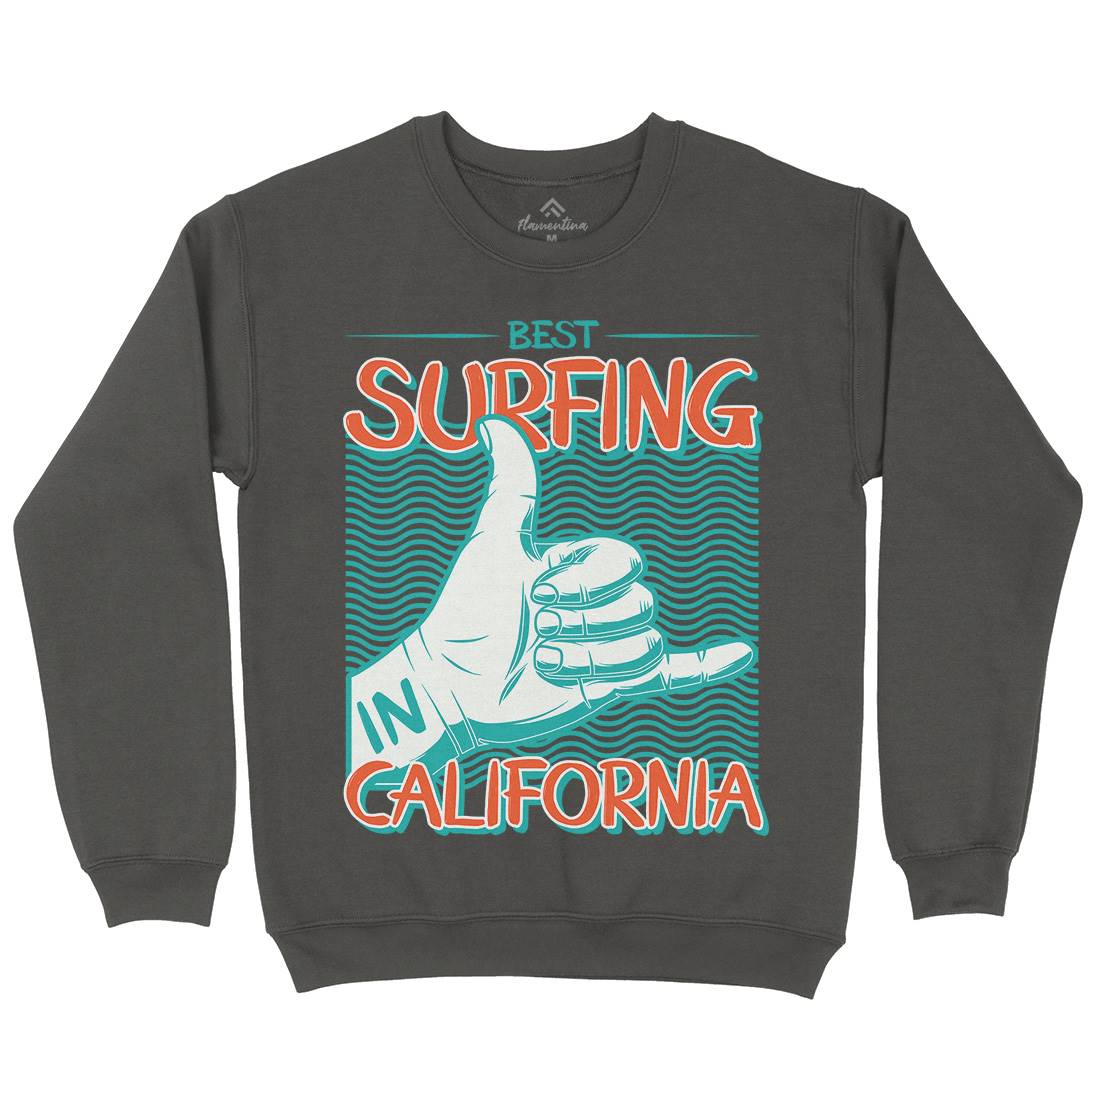 Best Surfing Mens Crew Neck Sweatshirt Surf D908